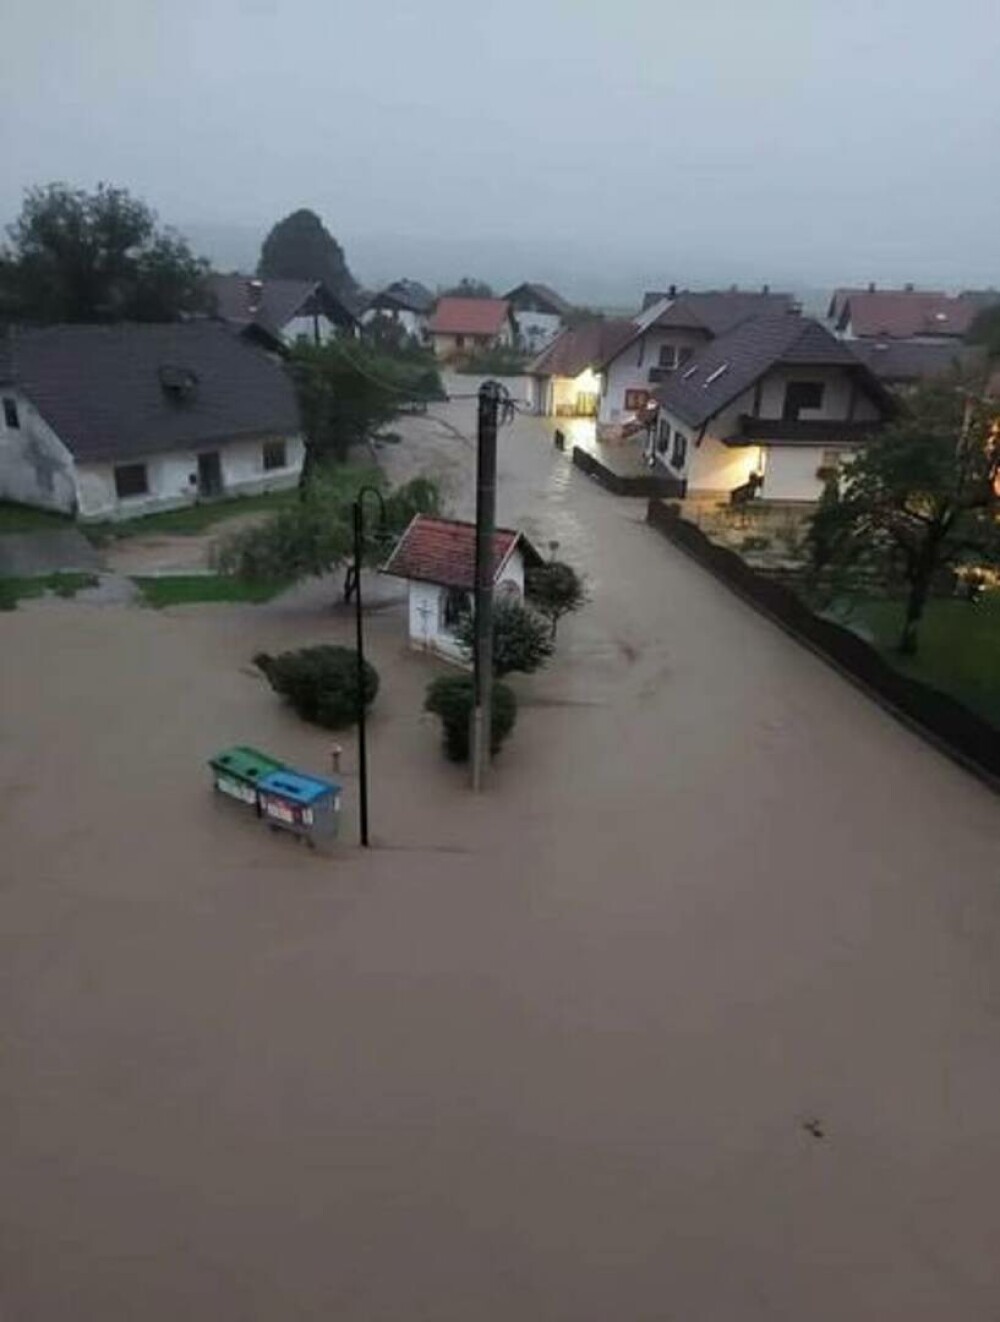 Slovenia, lovită de inundaţii de proporţii „biblice”. Apa a atins 2 metri în unele locuri. VIDEO - Imaginea 6